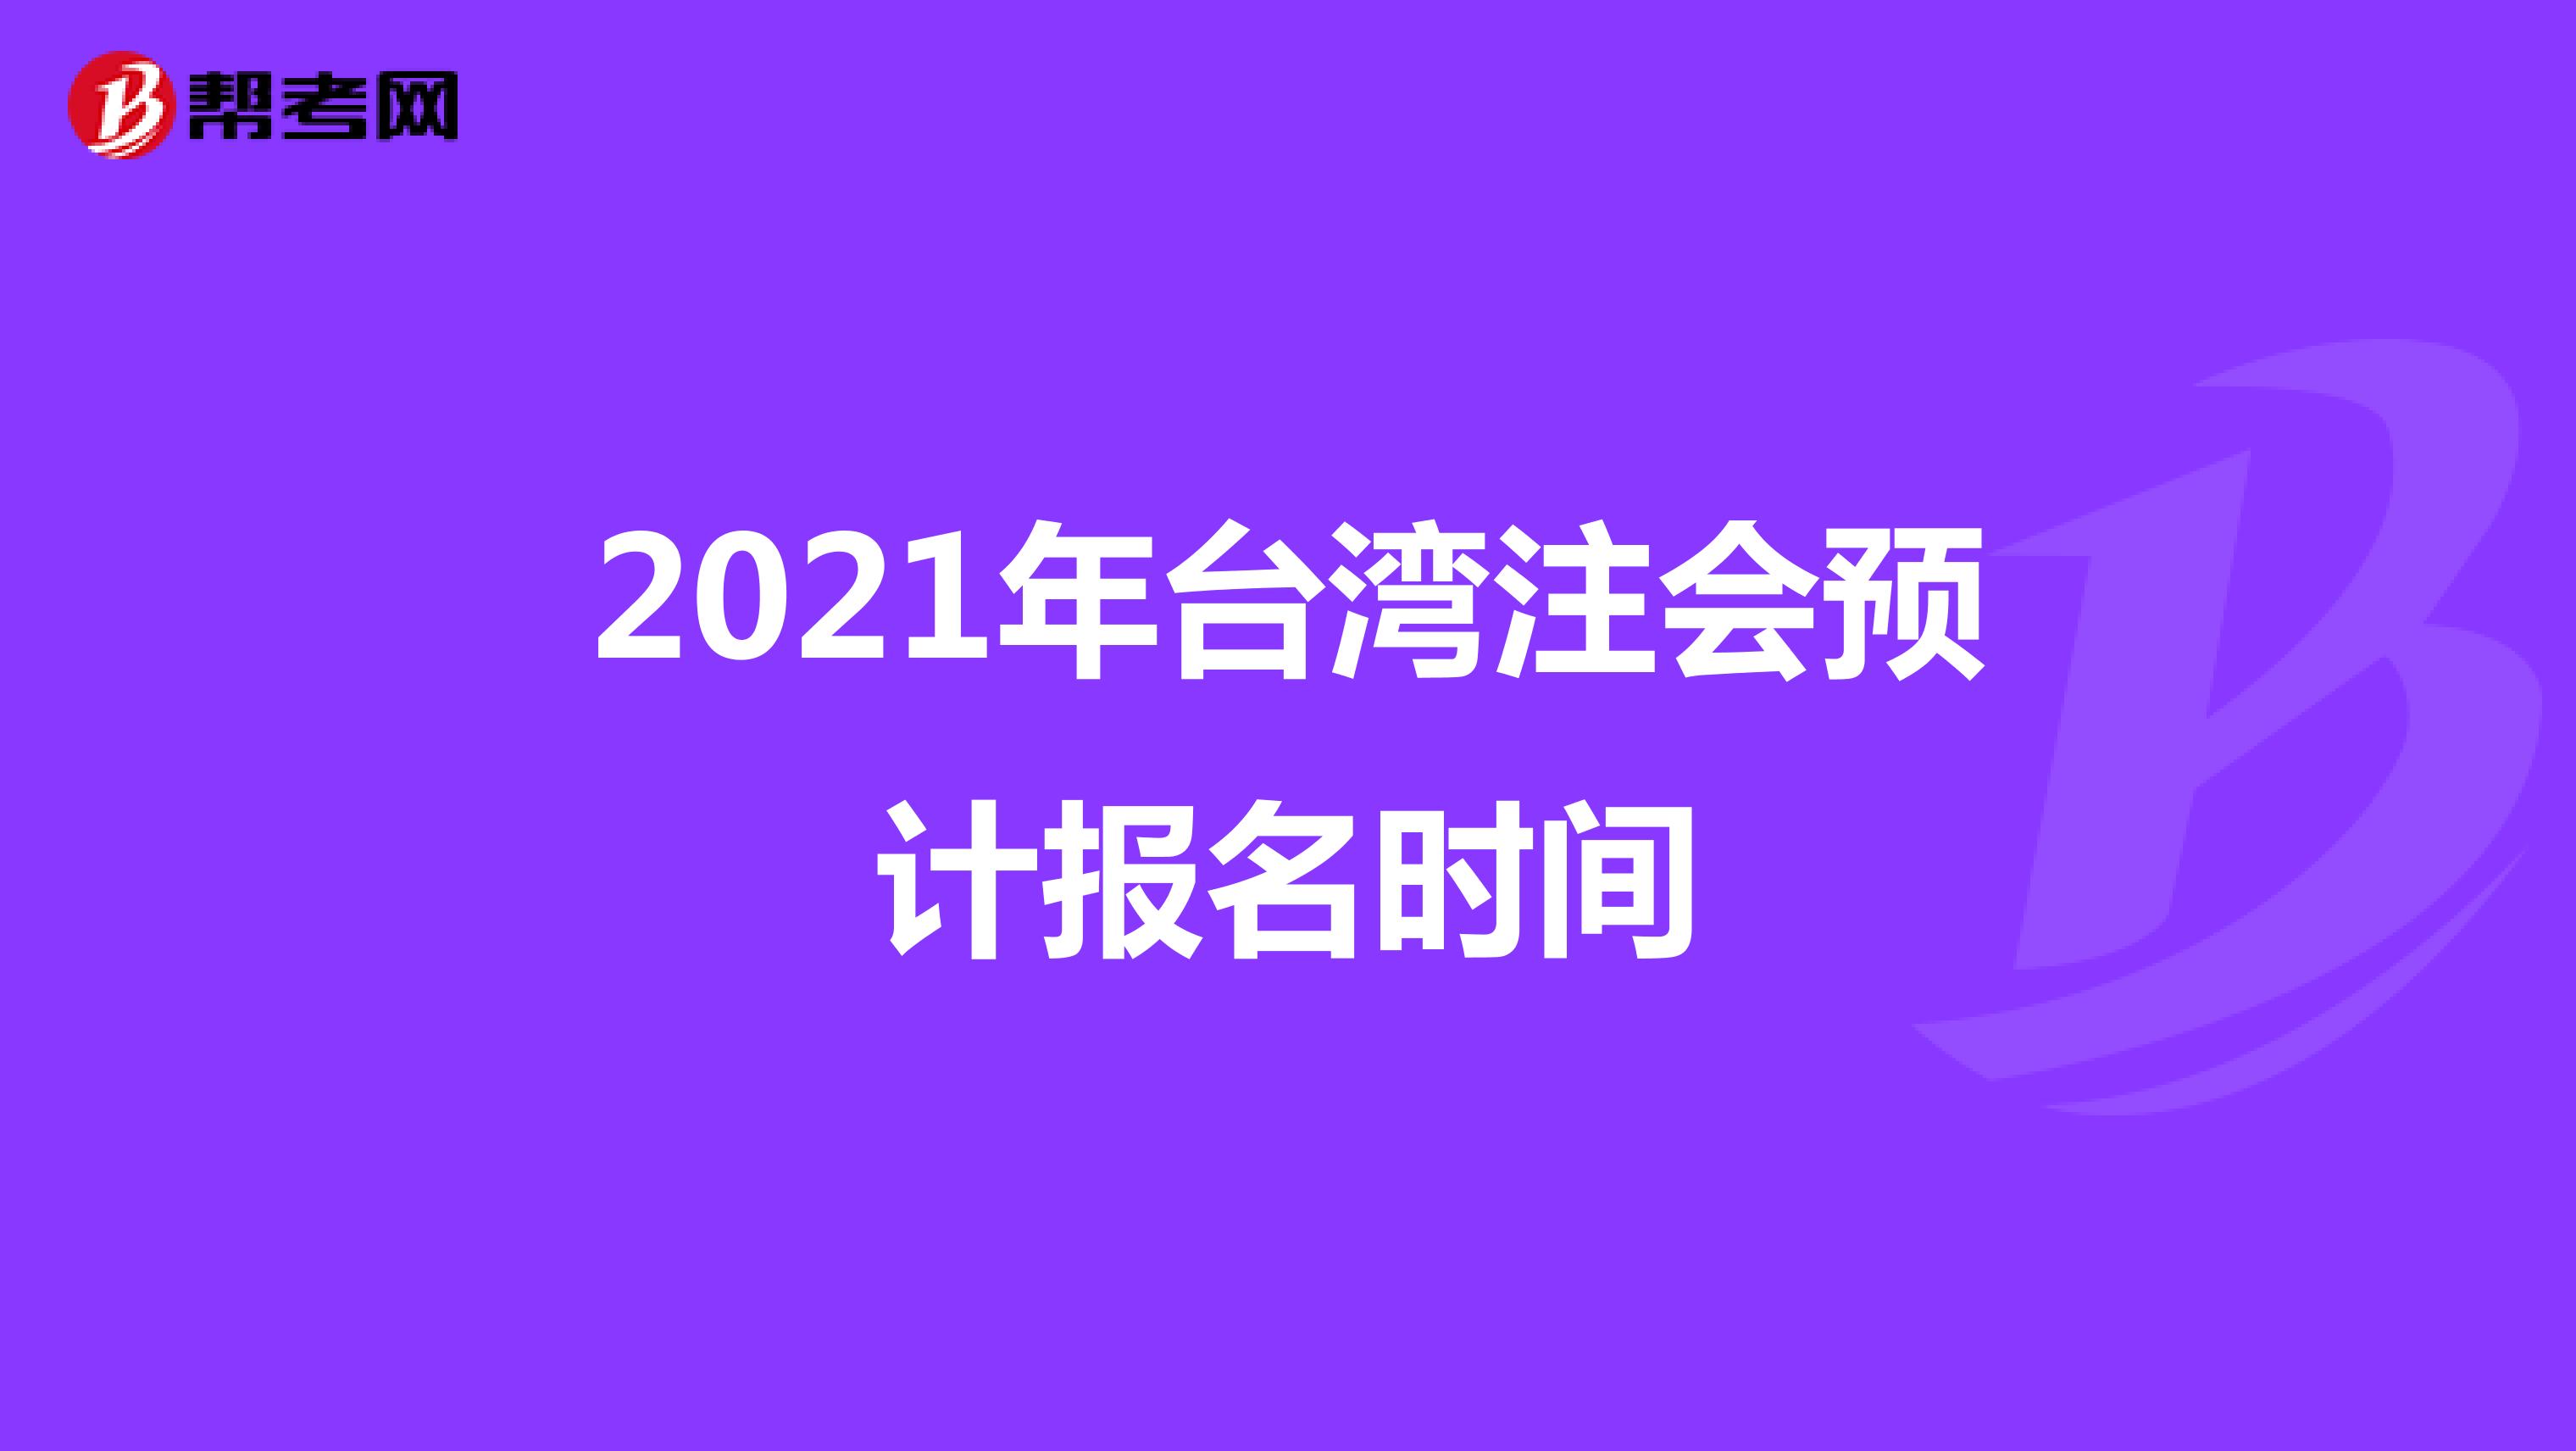 2021年台湾注会预计报名时间